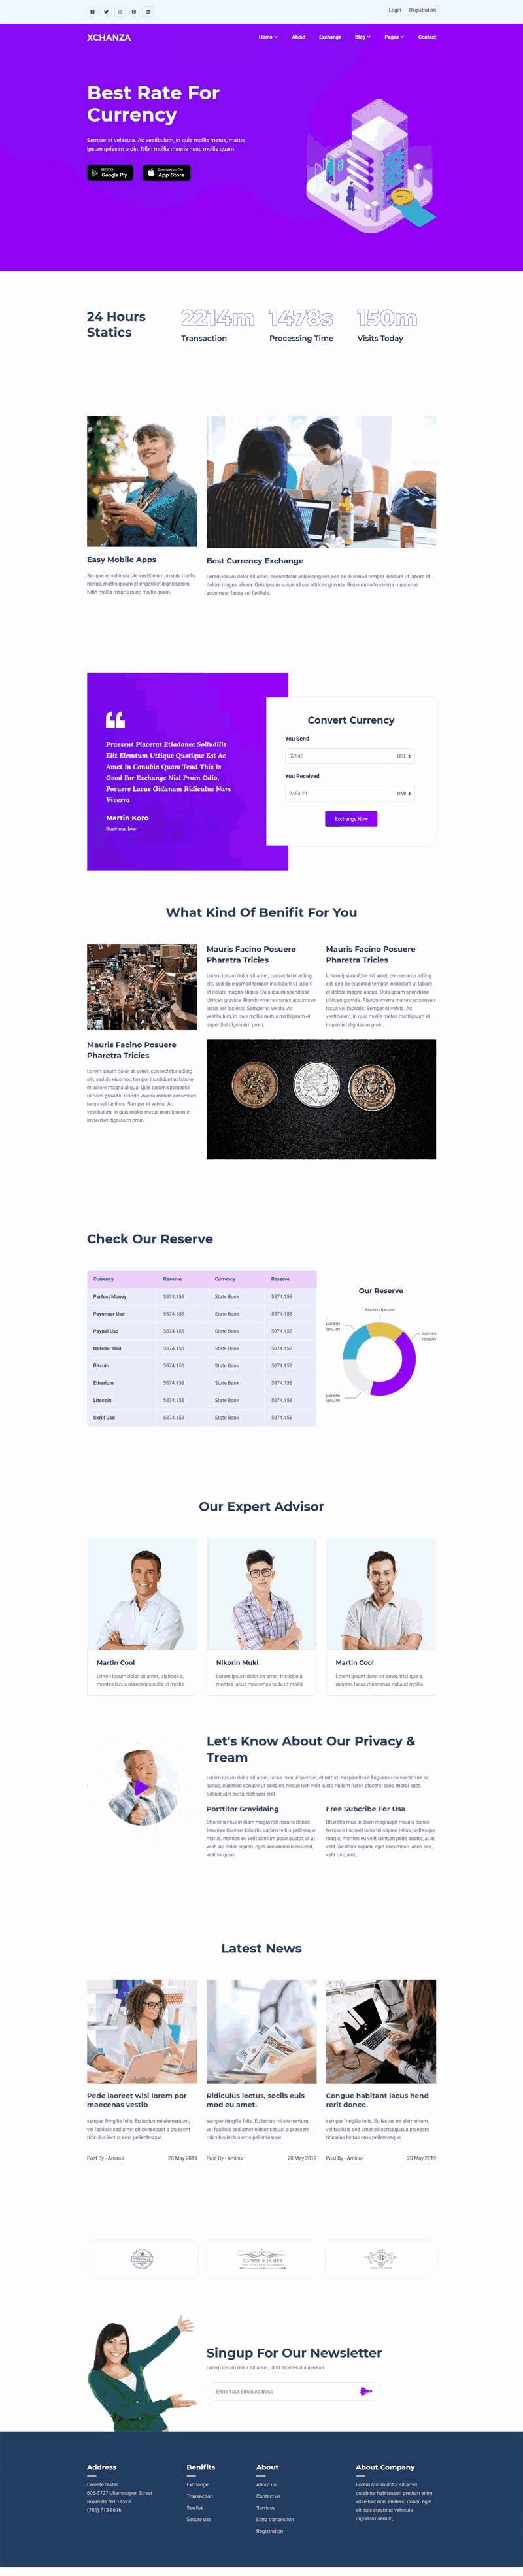 银行货币交易网站WordPress模板主题演示图